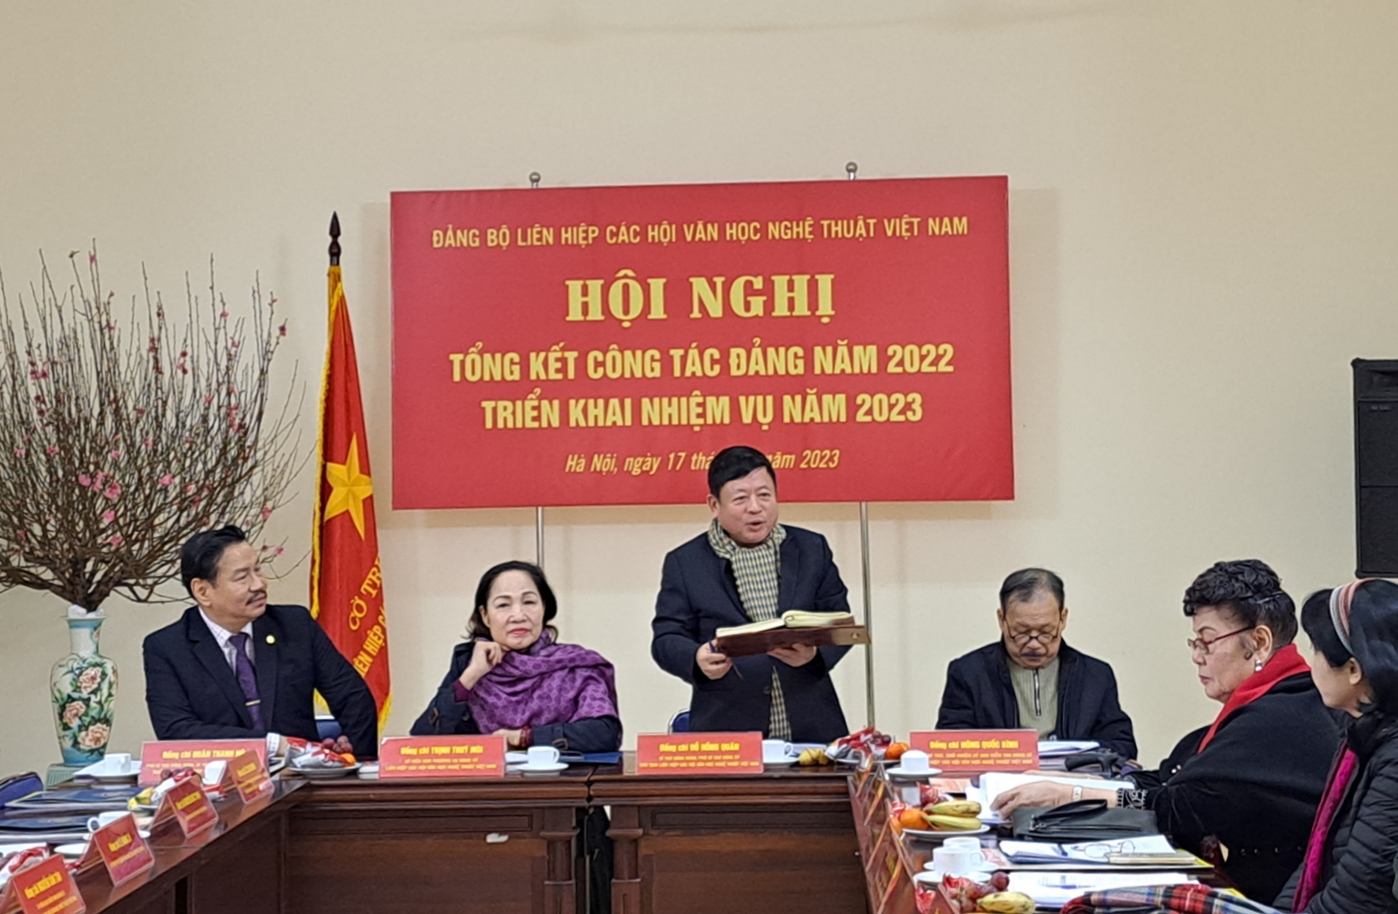 Nhìn lại công tác Đảng năm 2022 của Đảng bộ Liên hiệp các Hội Văn học nghệ thuật Việt Nam - 1